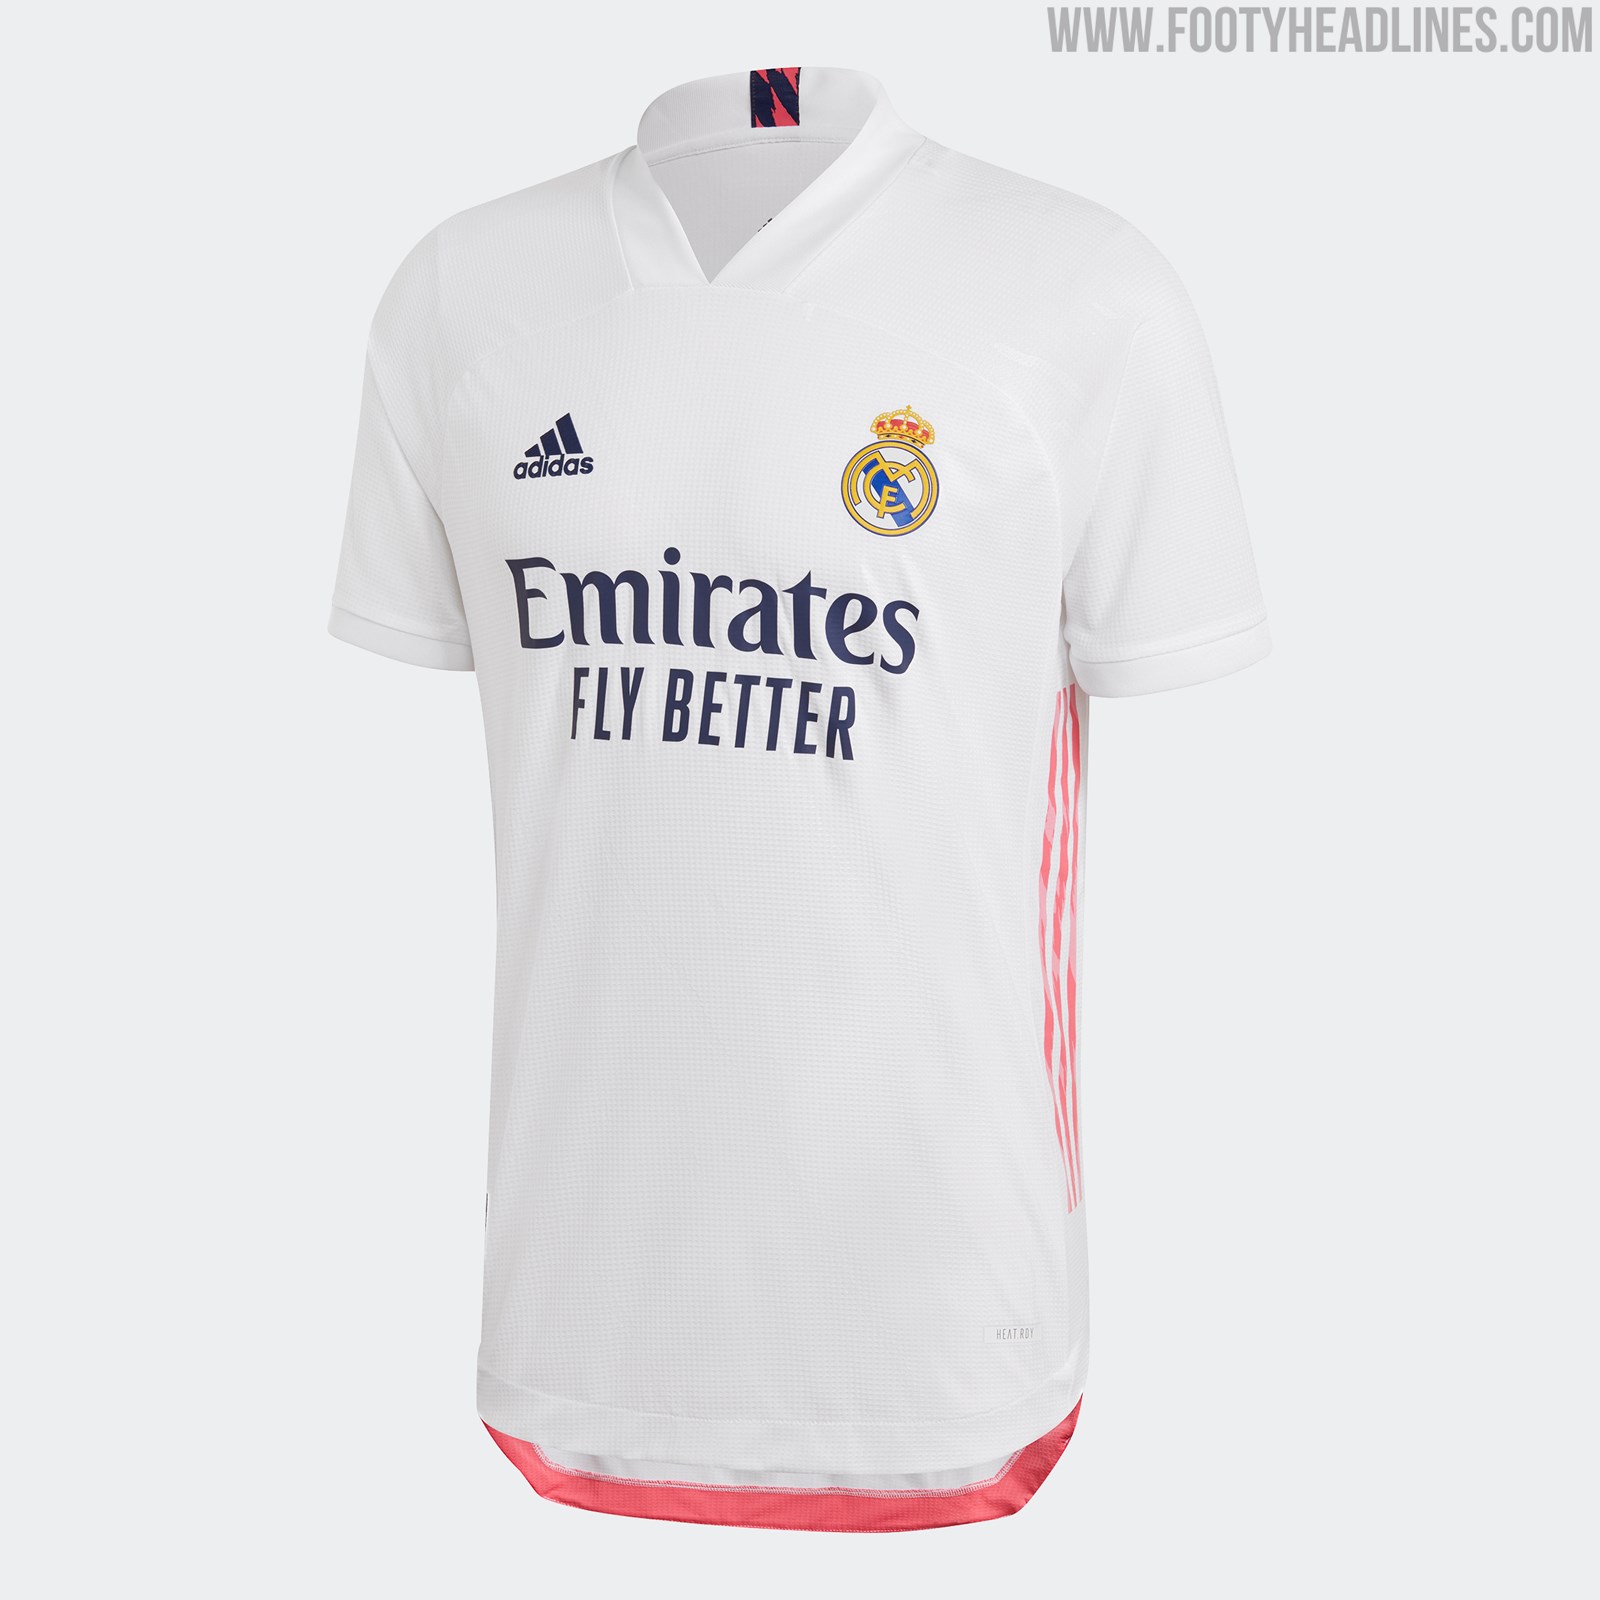 Real Madrid 21-22 Away Kit Released - Footy Headlines